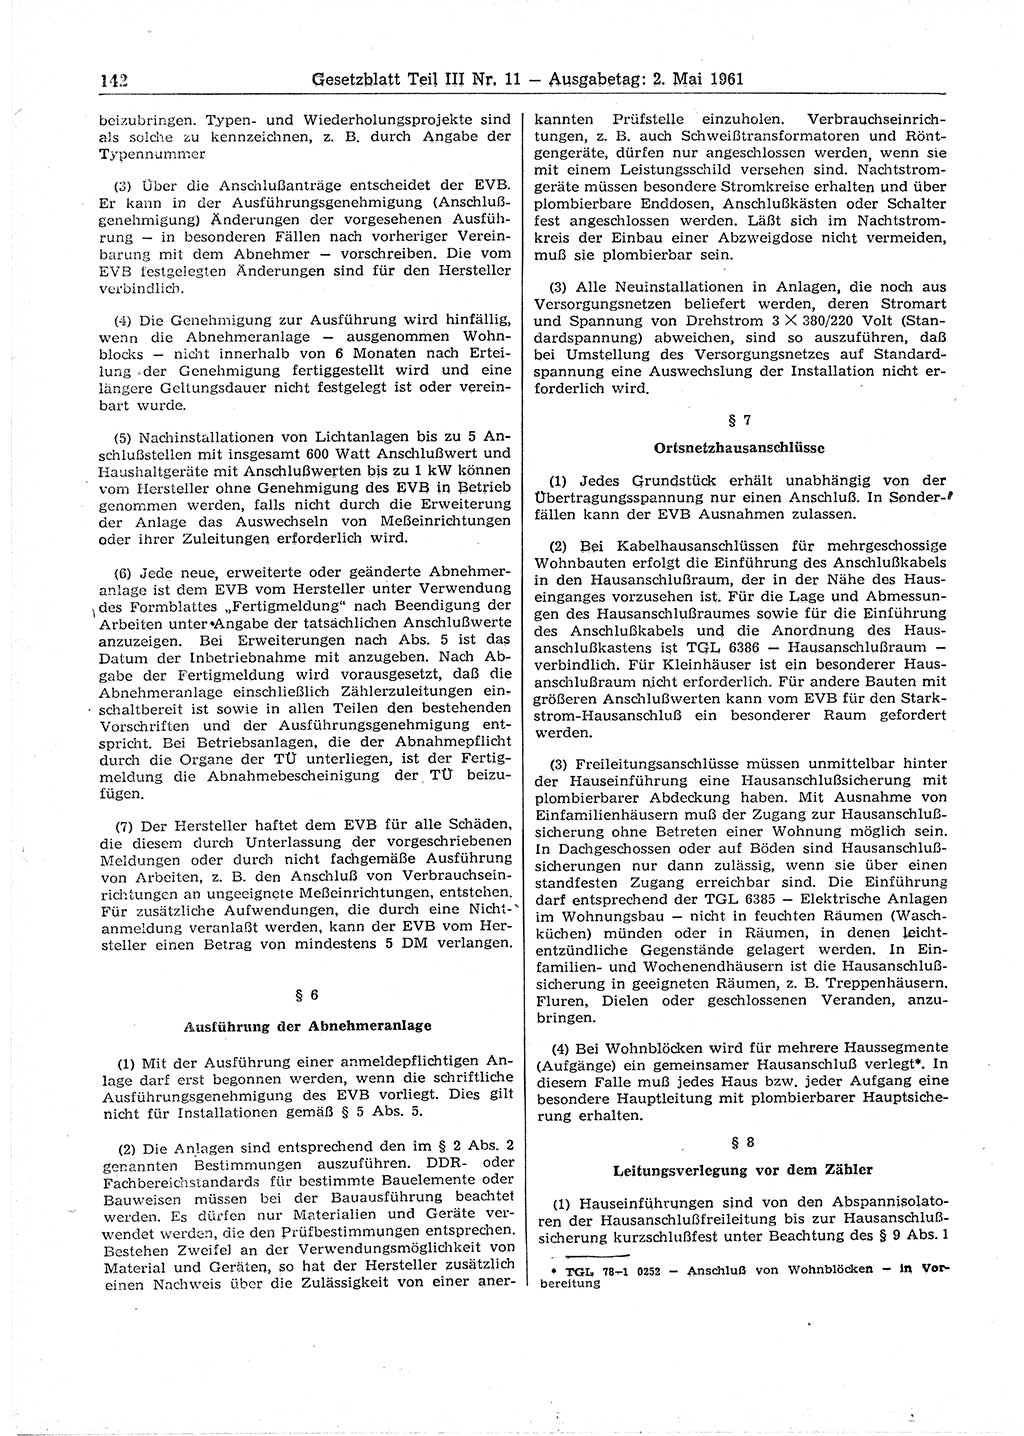 Gesetzblatt (GBl.) der Deutschen Demokratischen Republik (DDR) Teil ⅠⅠⅠ 1961, Seite 142 (GBl. DDR ⅠⅠⅠ 1961, S. 142)